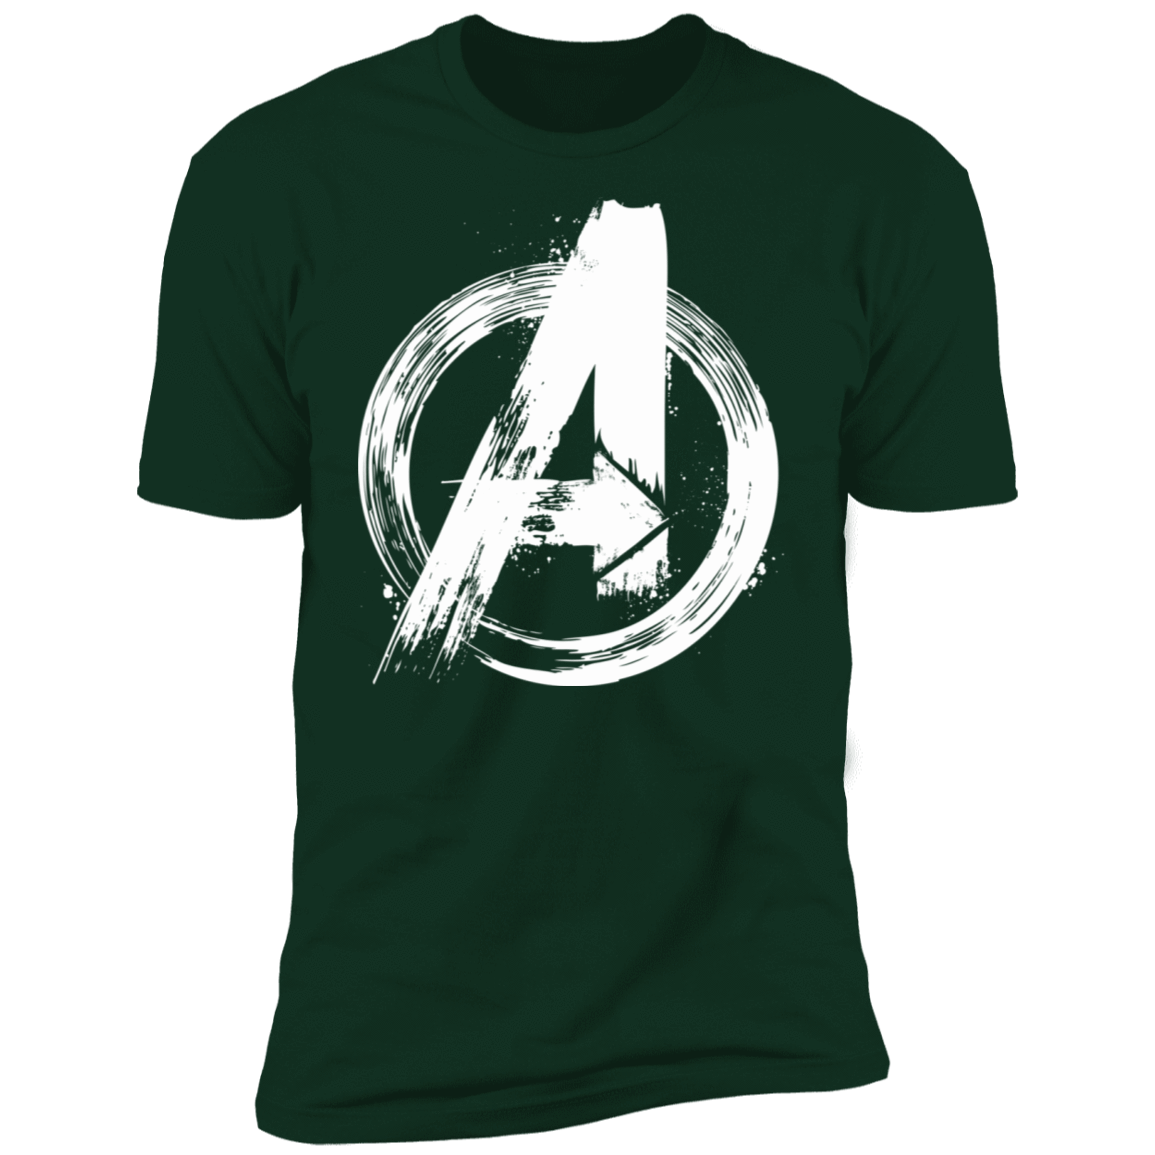 T-Shirts Forest Green / S I Am An Avenger Men's Premium T-Shirt